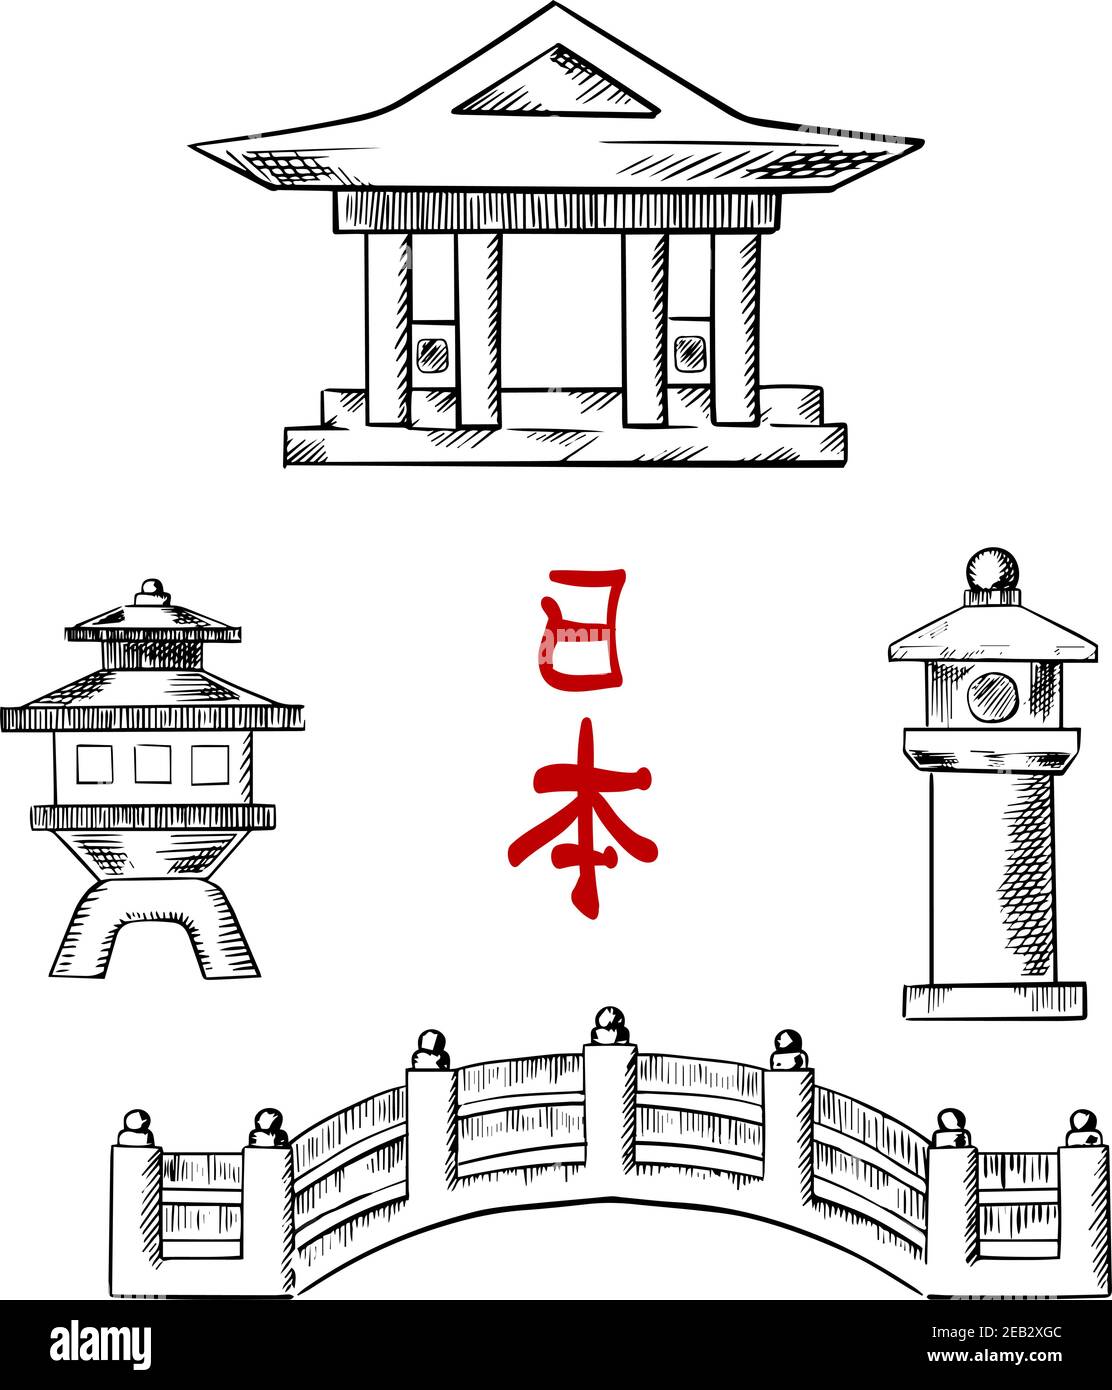 Icônes de l'architecture japonaise traditionnelle avec pont, temple et lanternes en pierre. Pour la culture orientale et le design de voyage, dessinez des icônes Illustration de Vecteur